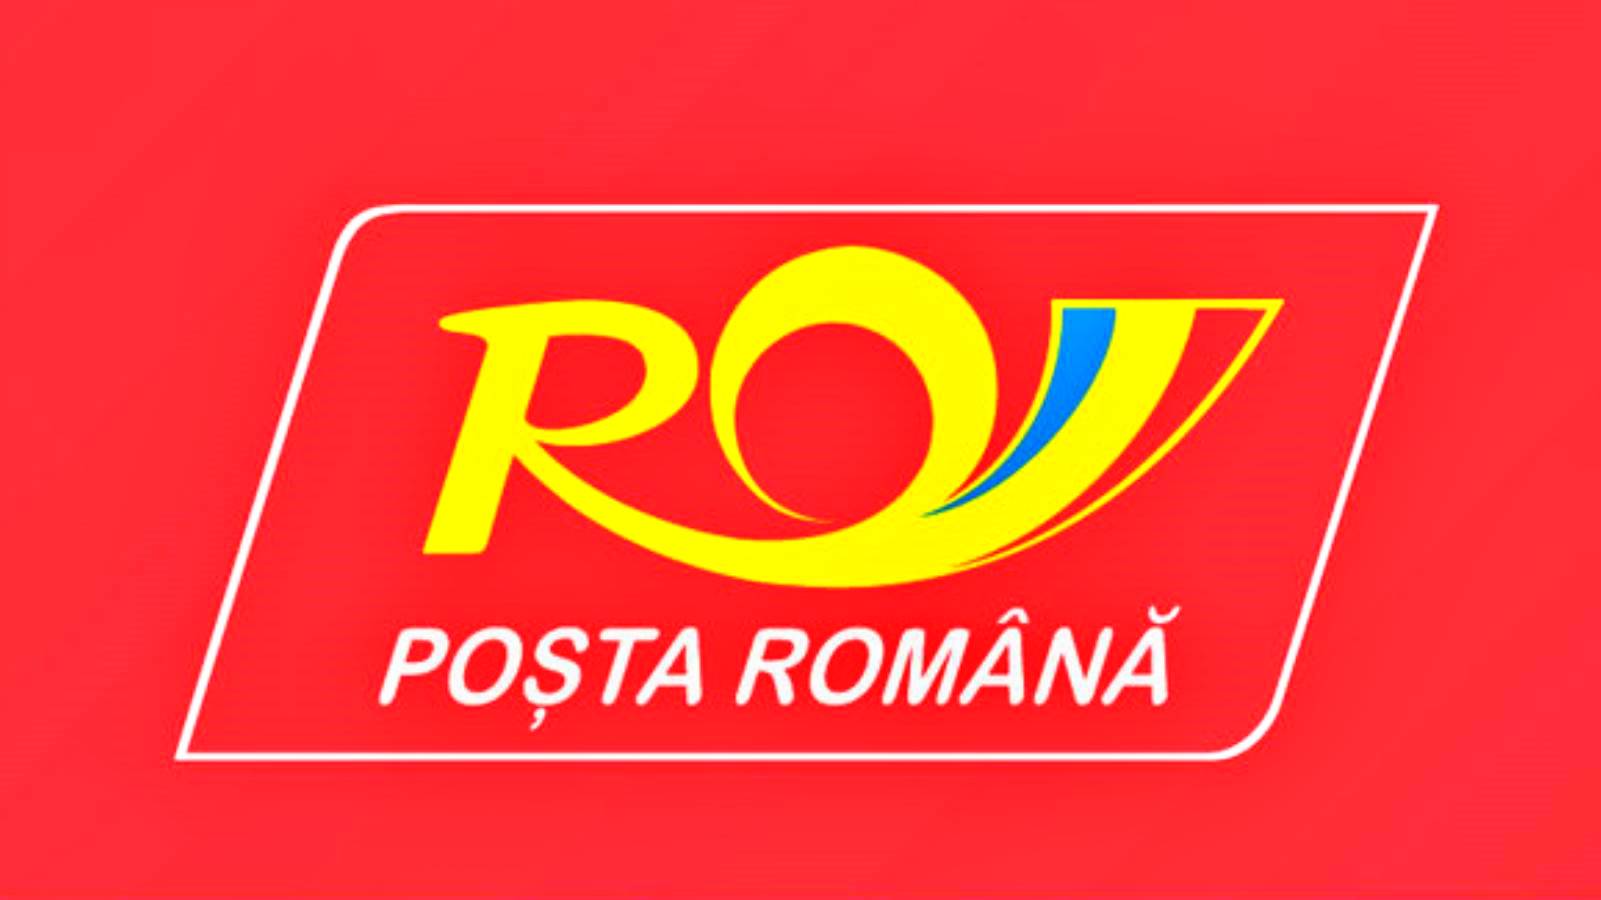 Romanian posti kertoo romanialaisille, mitä monet ihmiset eivät tienneet